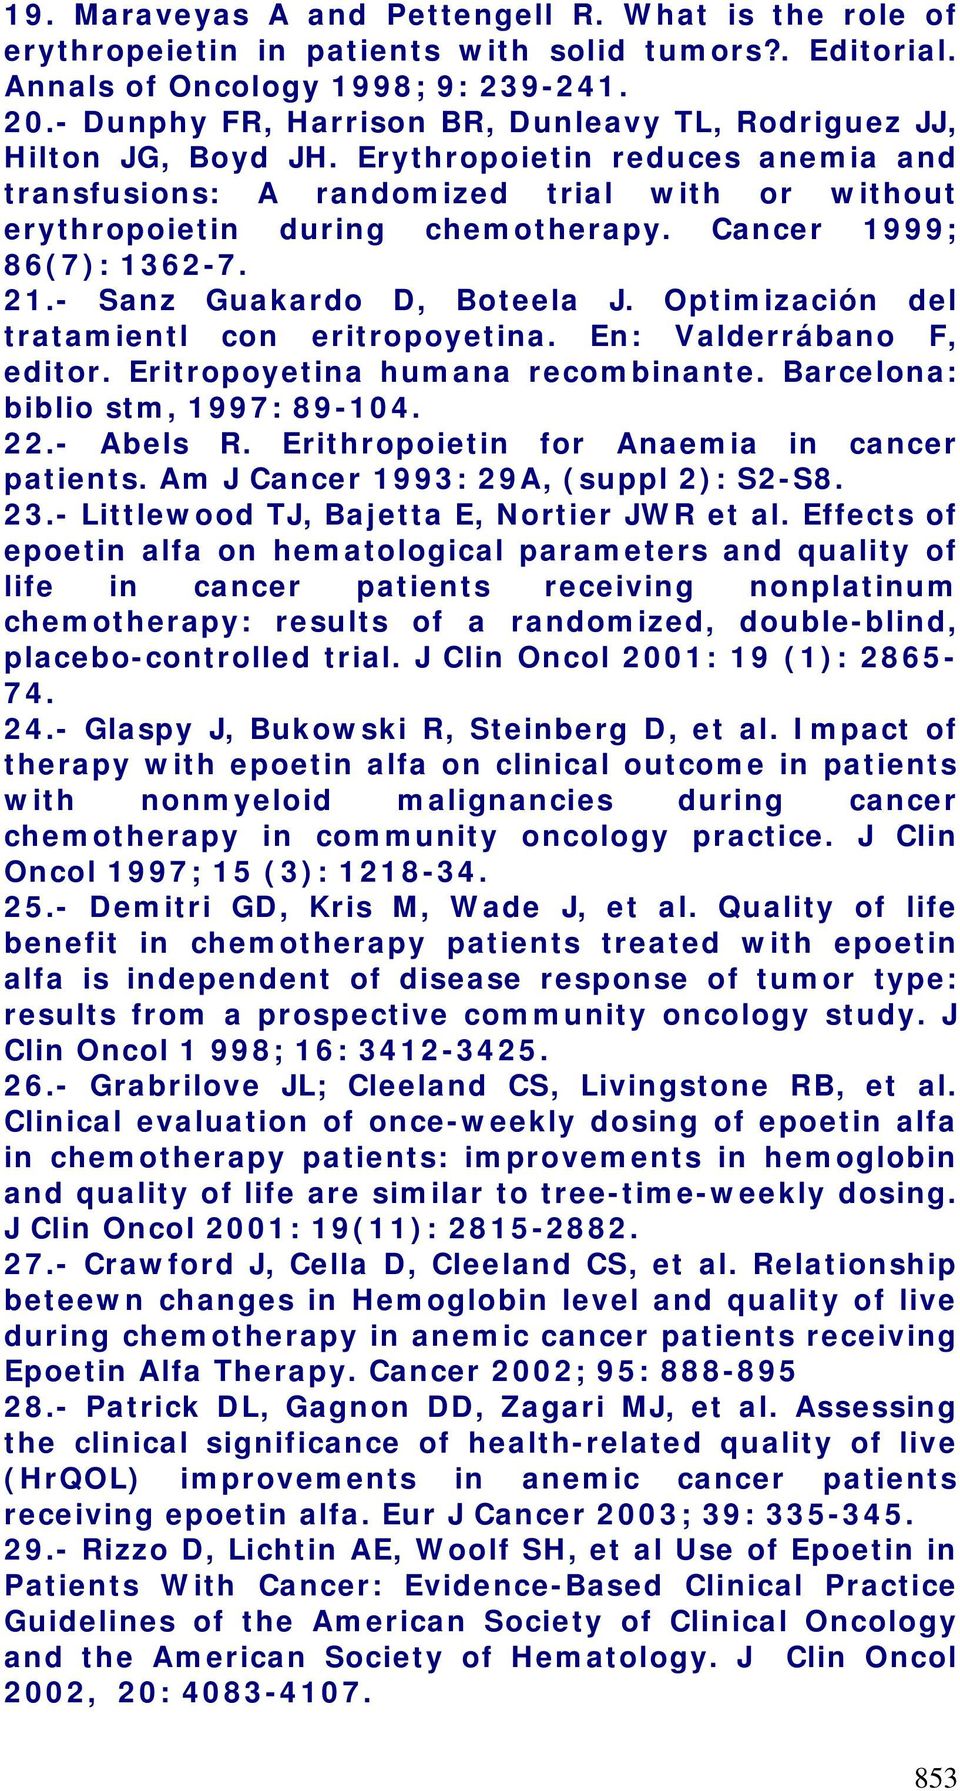 Cancer 1999; 86(7): 1362-7. 21.- Sanz Guakardo D, Boteela J. Optimización del tratamientl con eritropoyetina. En: Valderrábano F, editor. Eritropoyetina humana recombinante.